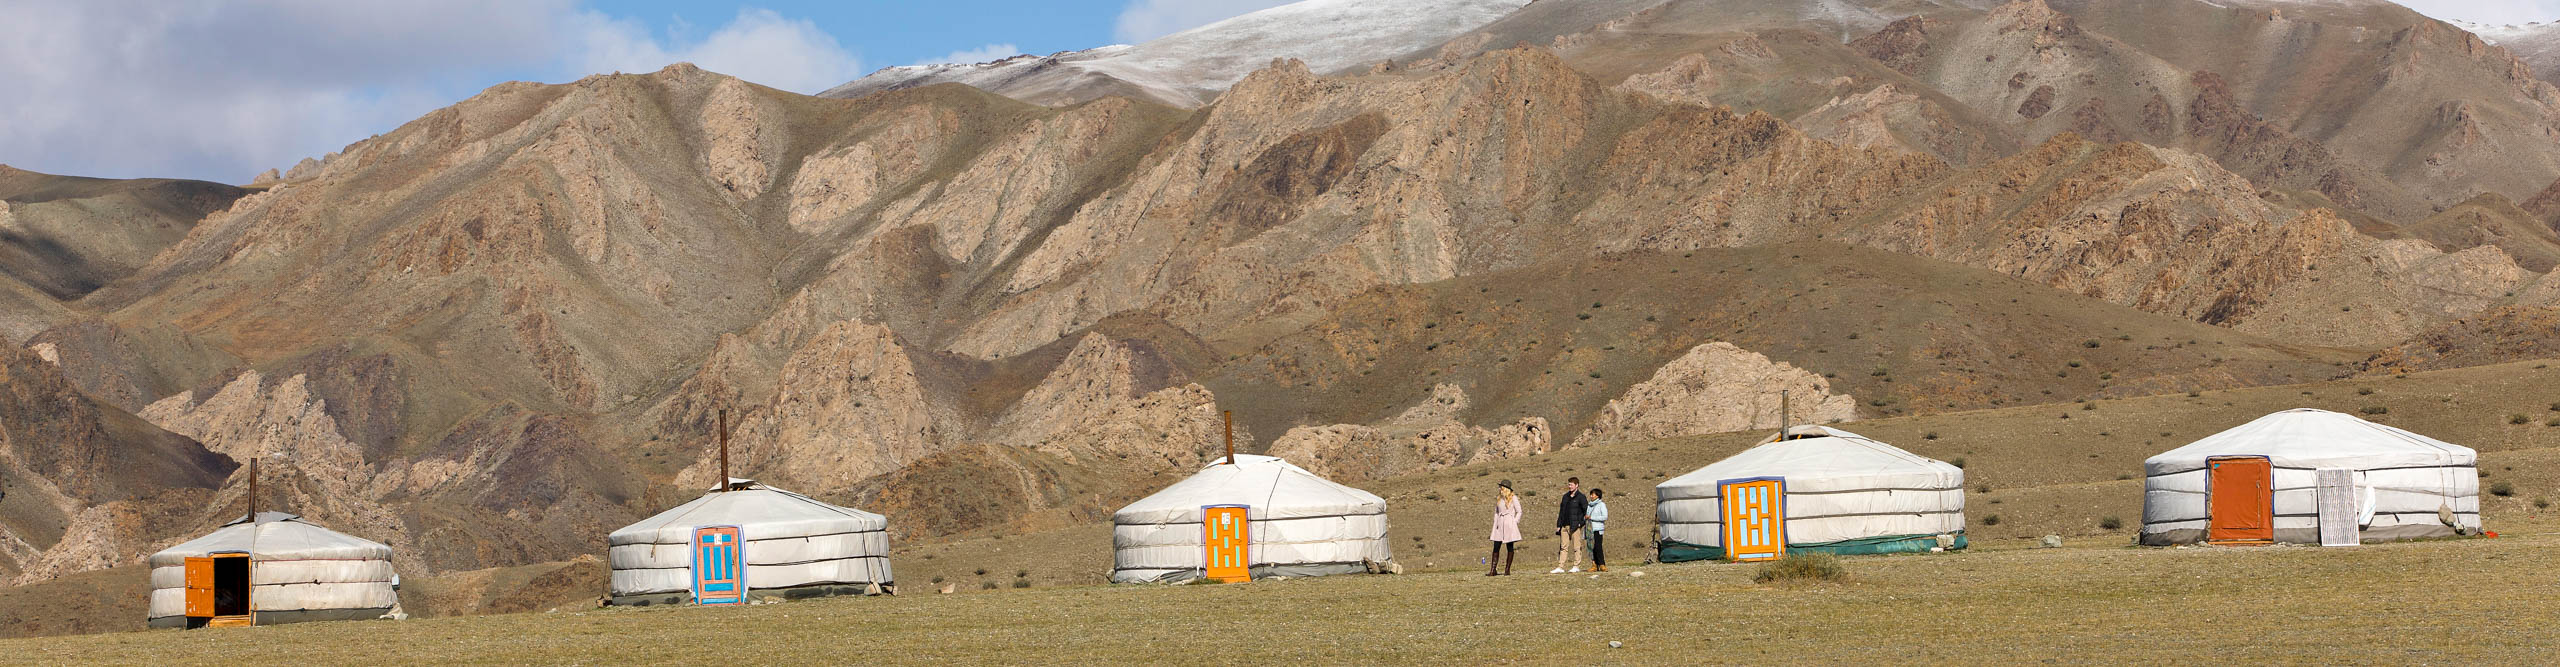 Tsagaan Khad Tourist Ger Camp, with yurt tents on Jargalant Khairkhan,  Mongolia 